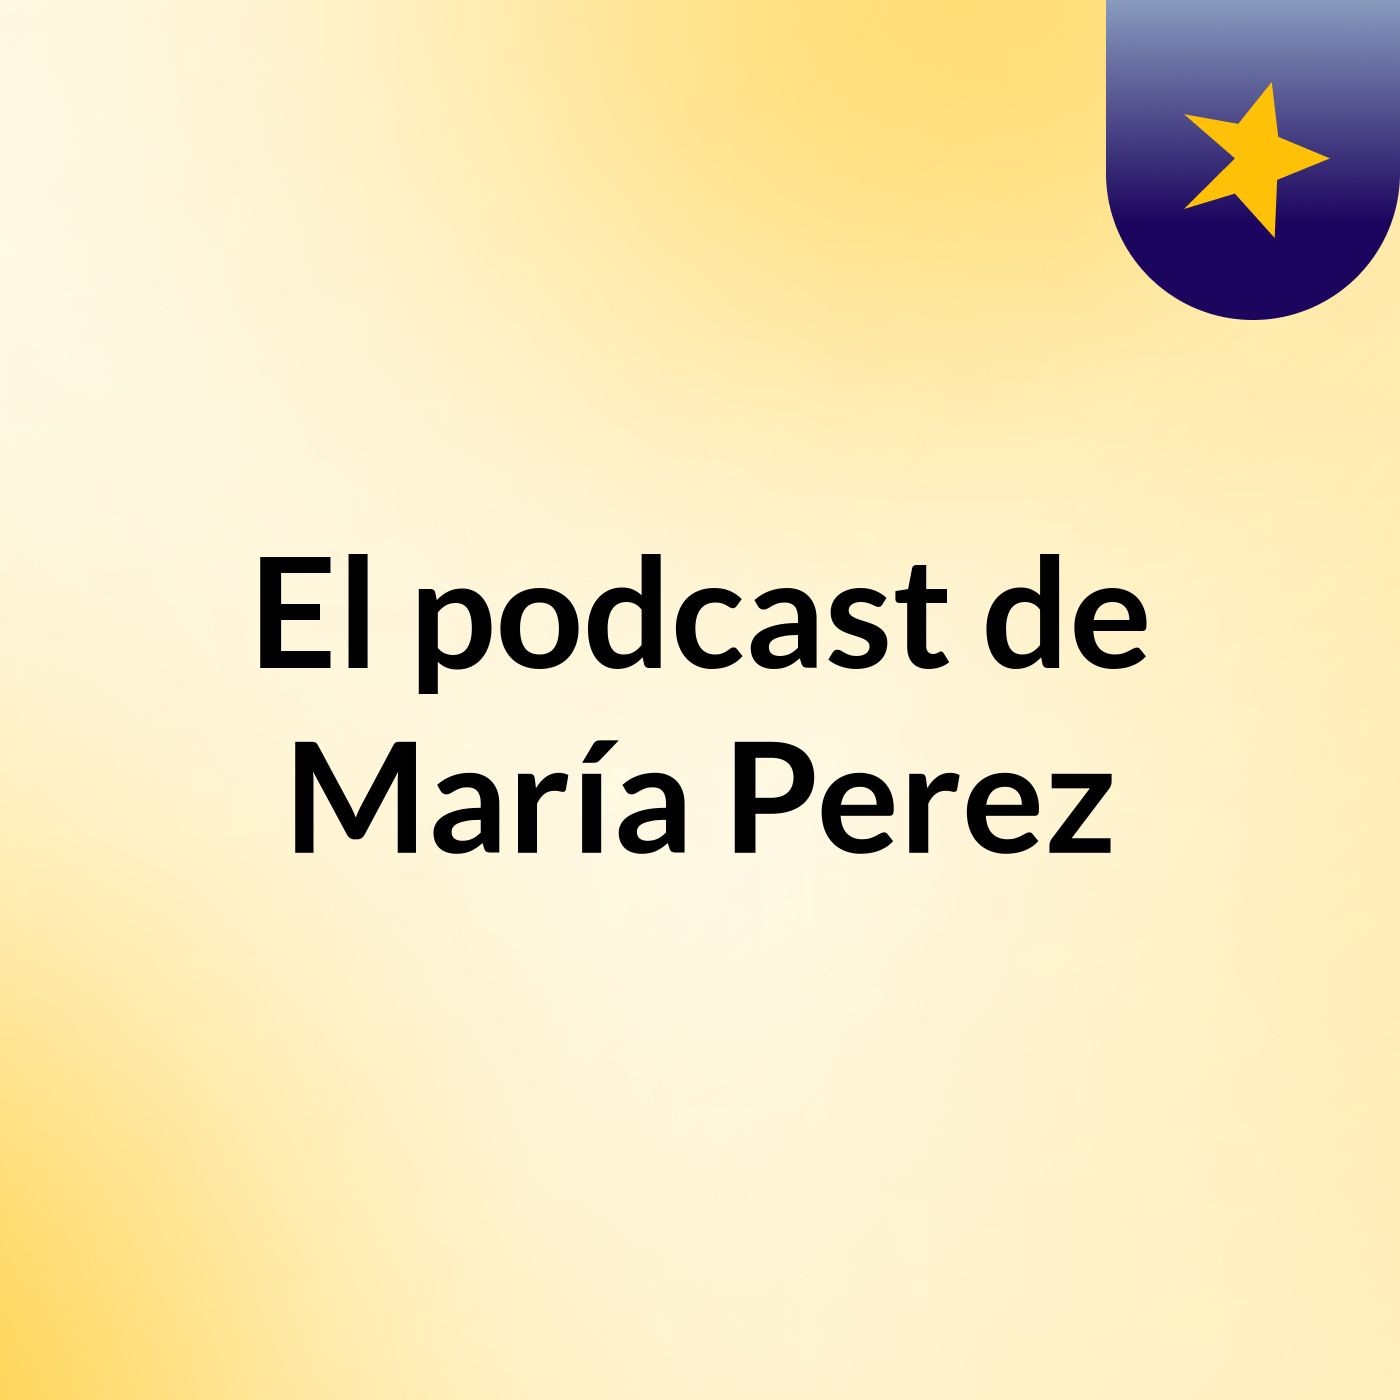 El podcast de María Perez